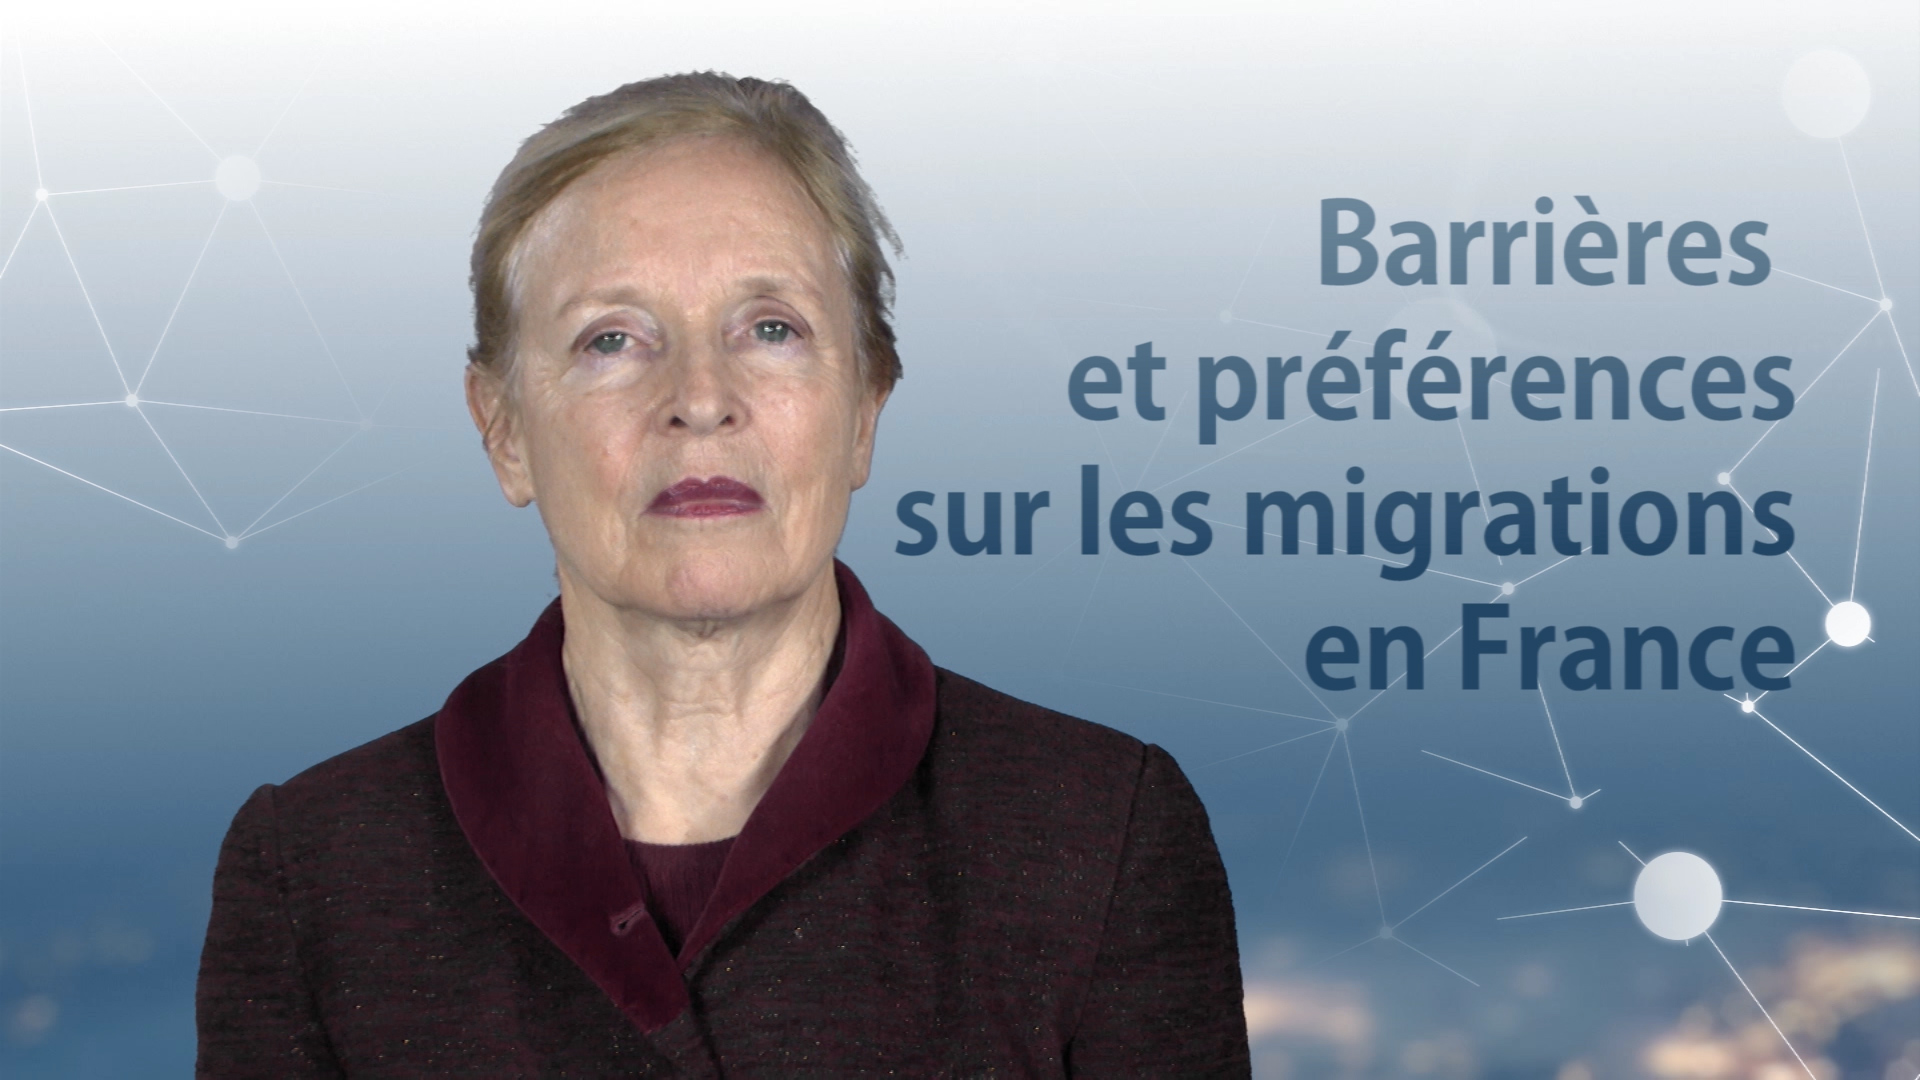 Barrières et préférences sur les migrations en France